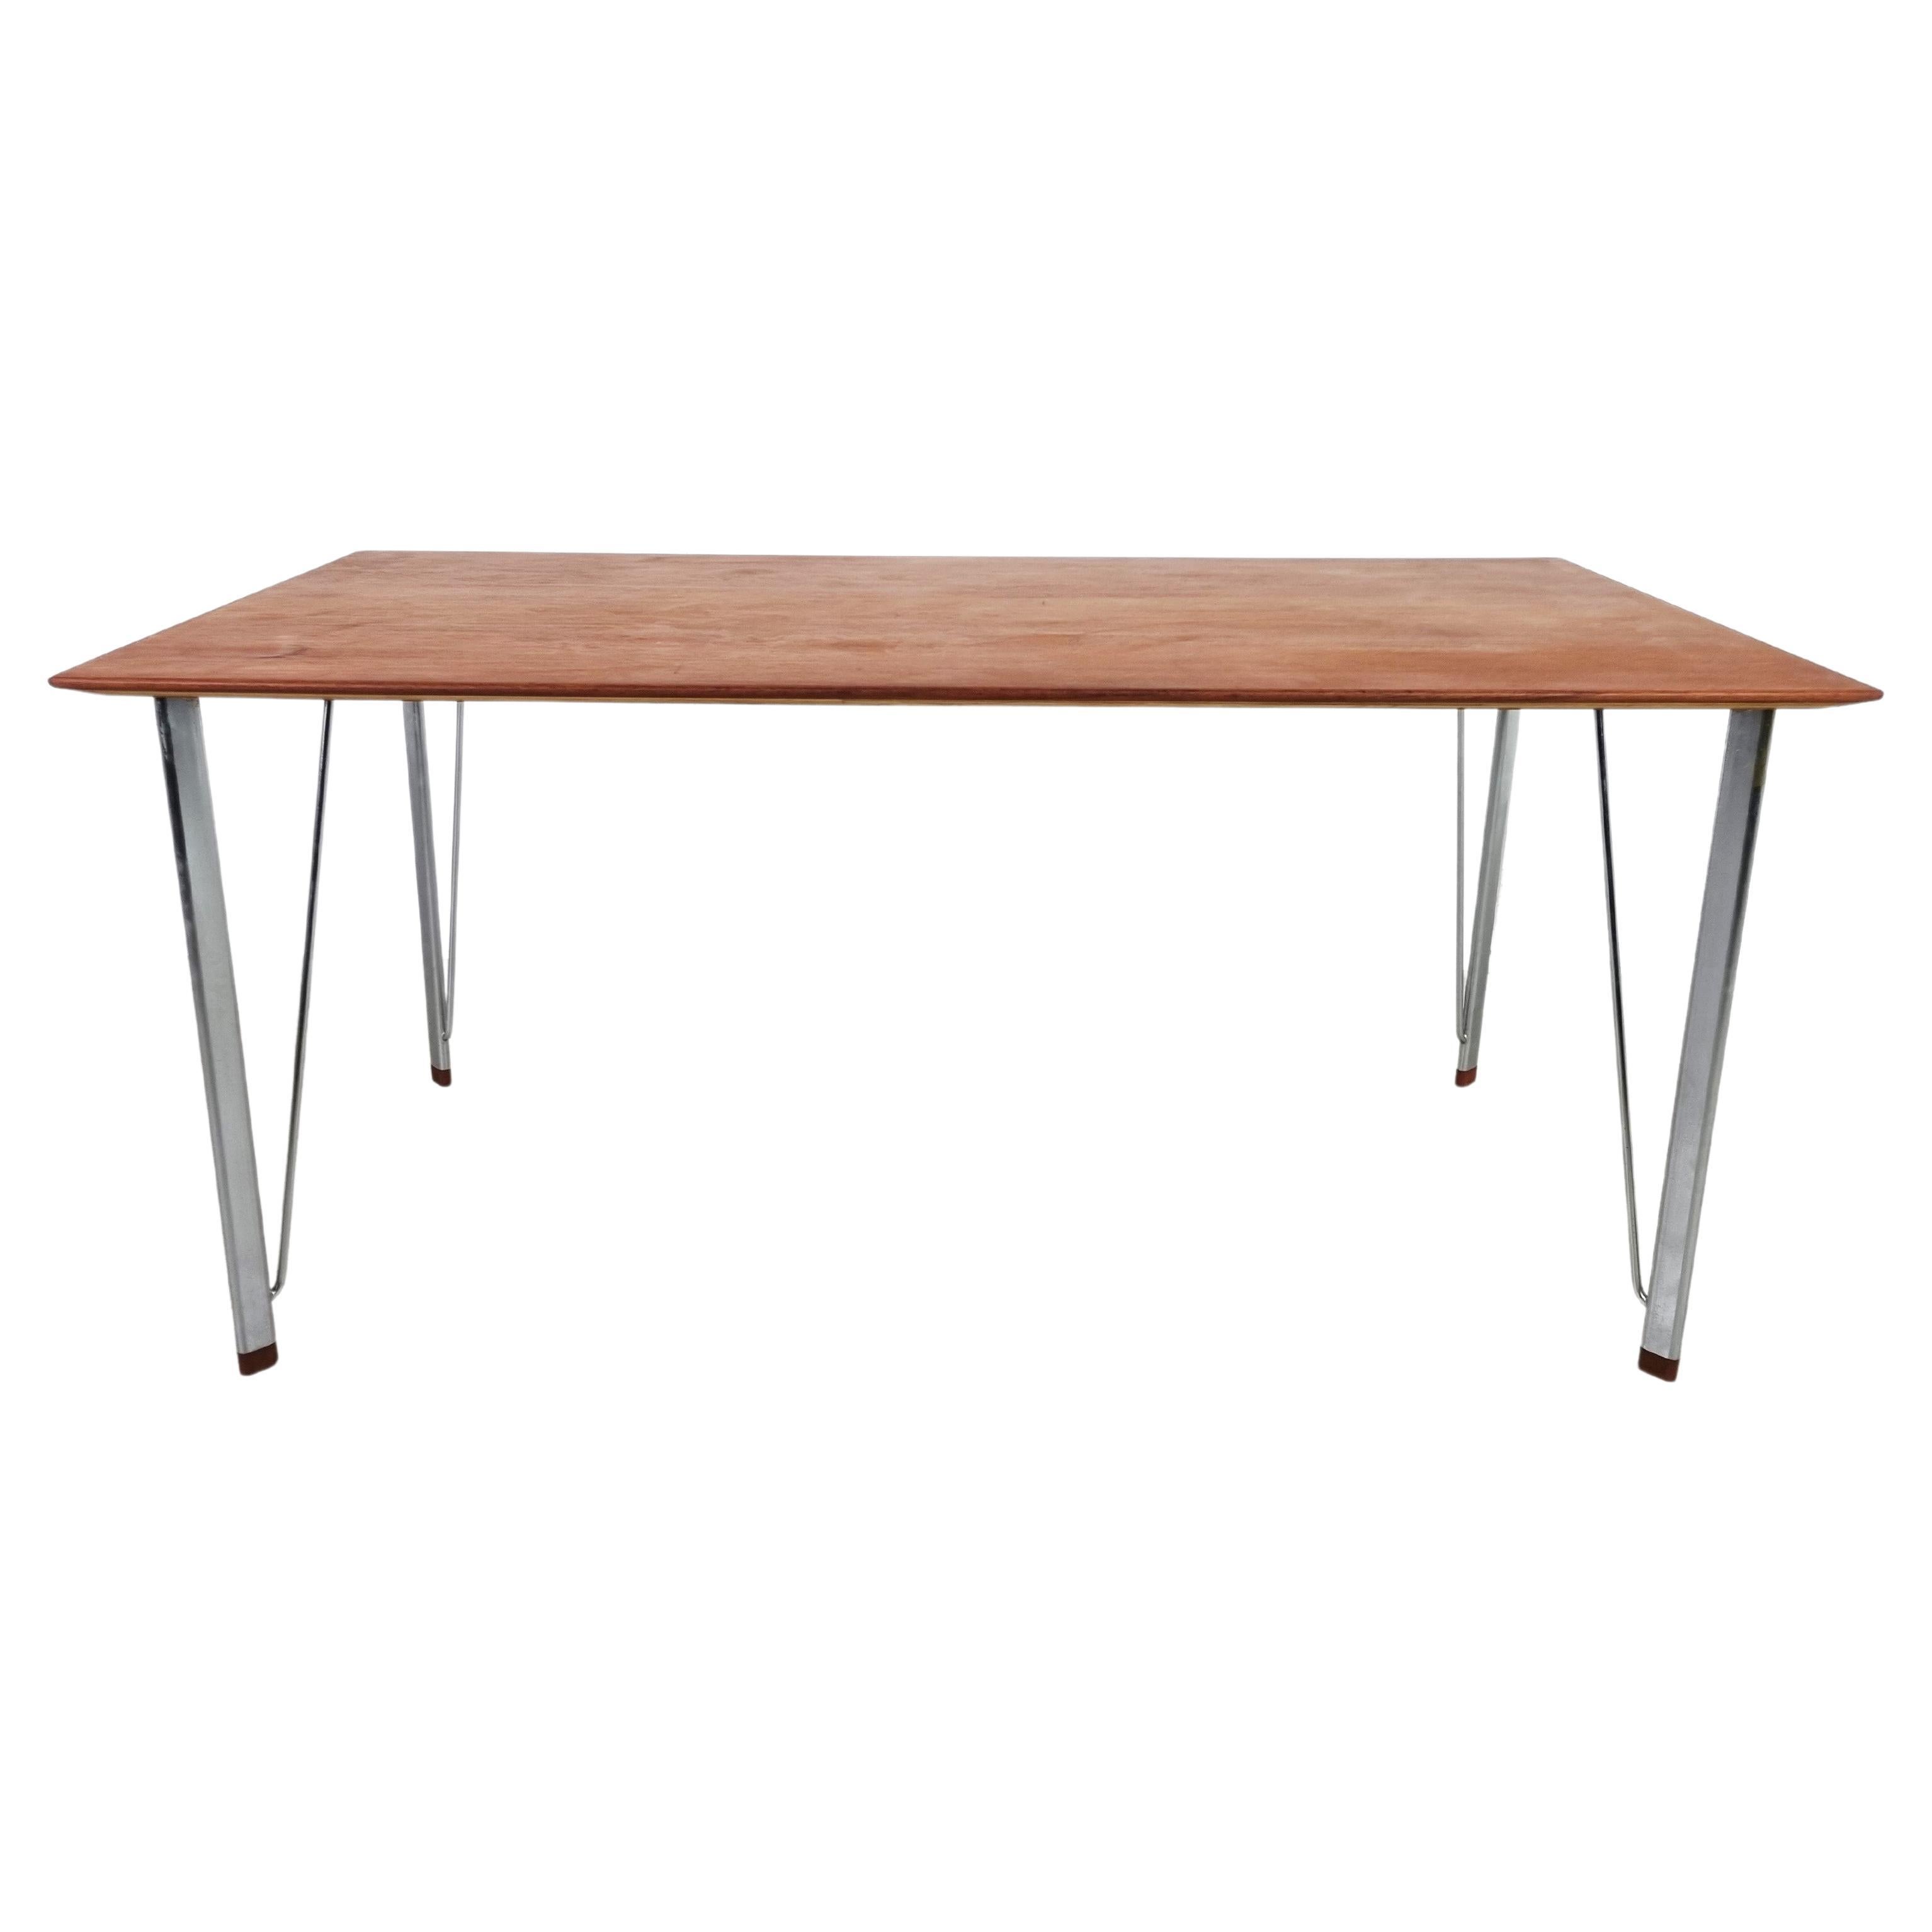 Rare Table Model 3605 by Arne Jacobsen, 1950s